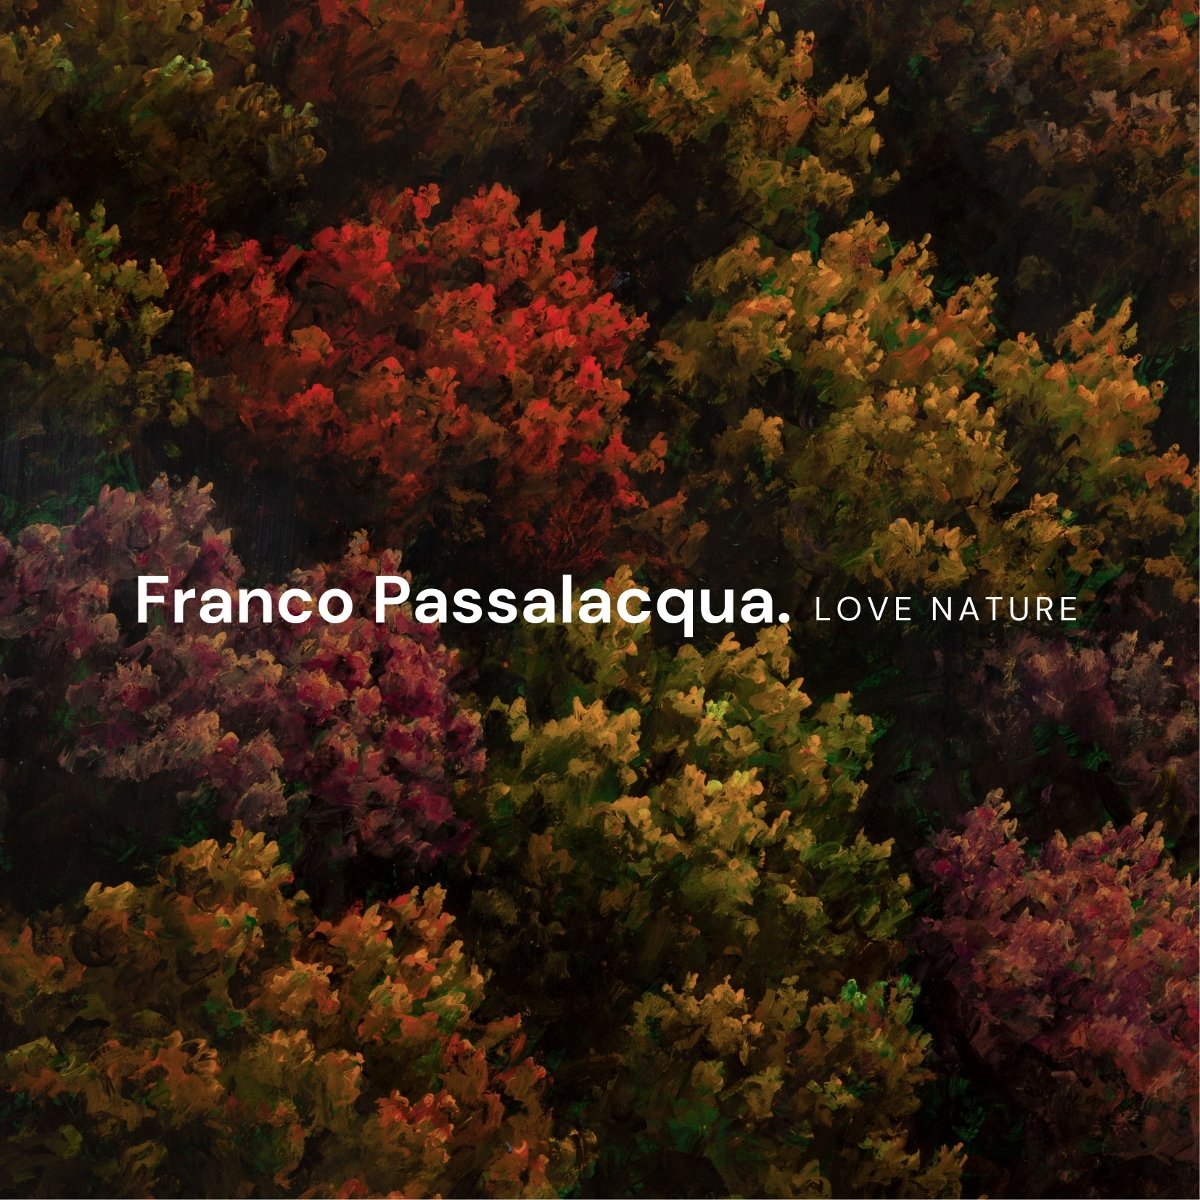 Franco Passalacqua - Love nature